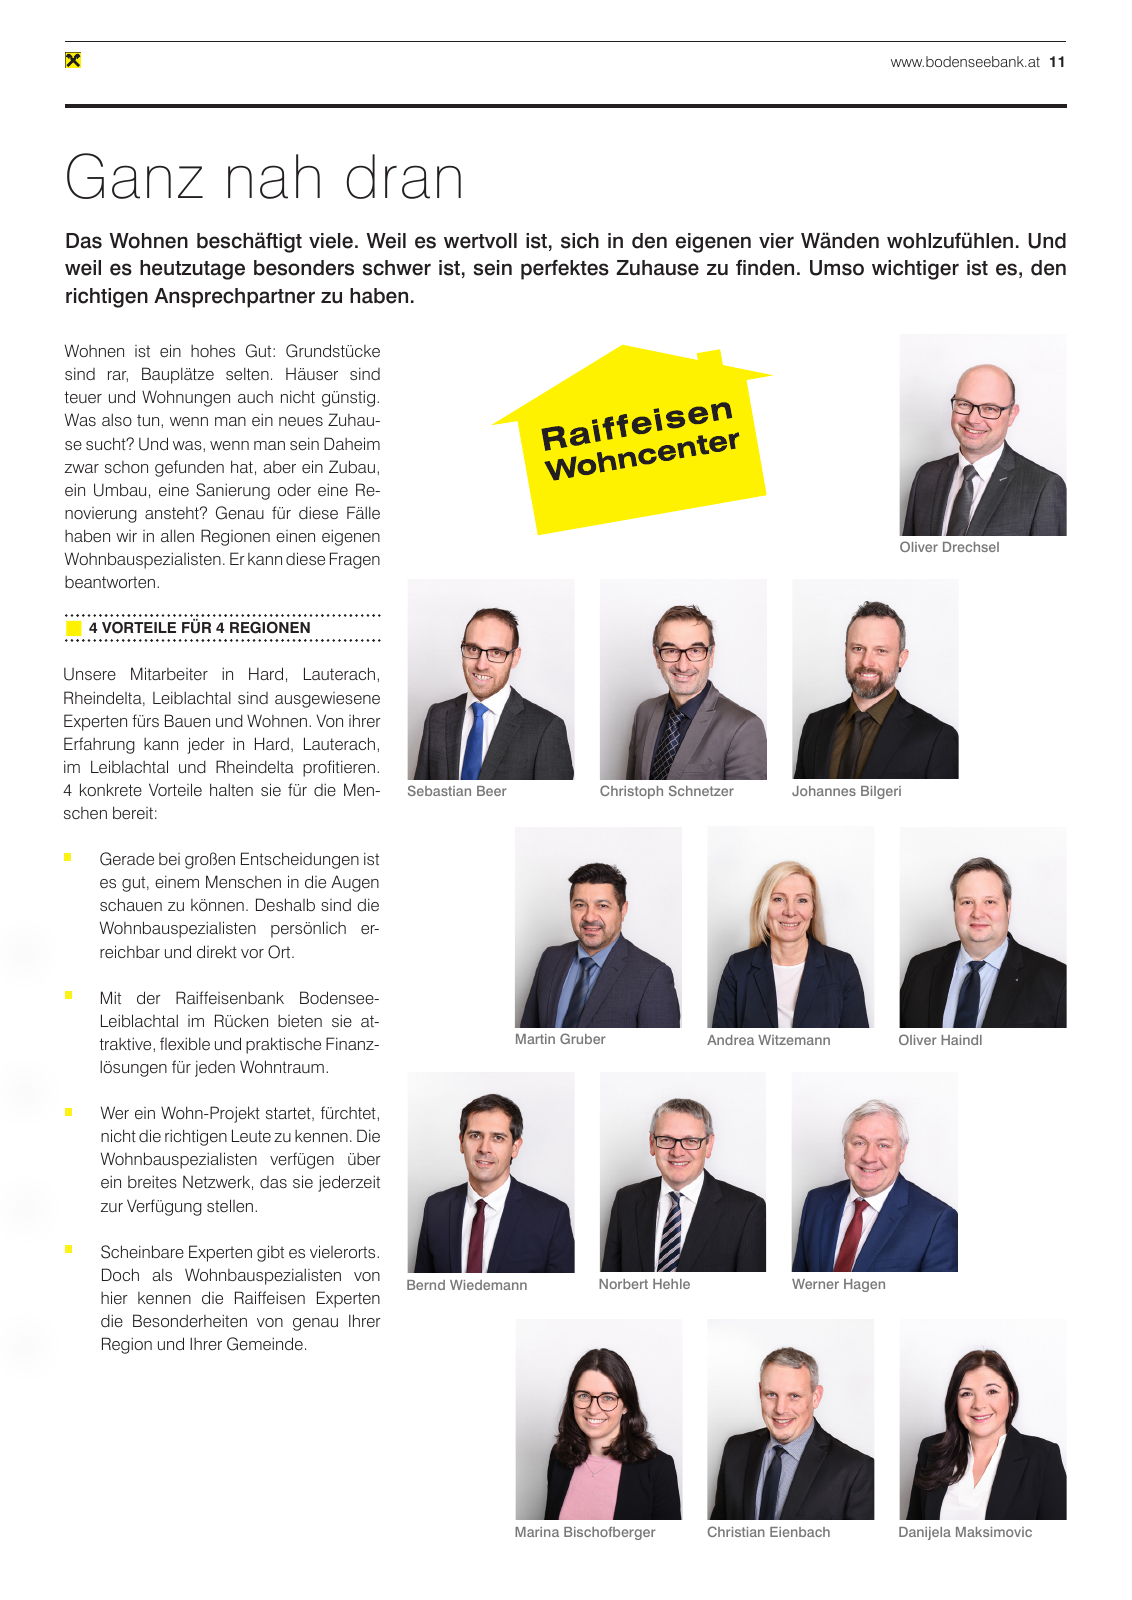 Vorschau Mitgliederzeitung RB Bodensee-Leiblachtal Frühjahr 2020 Seite 11